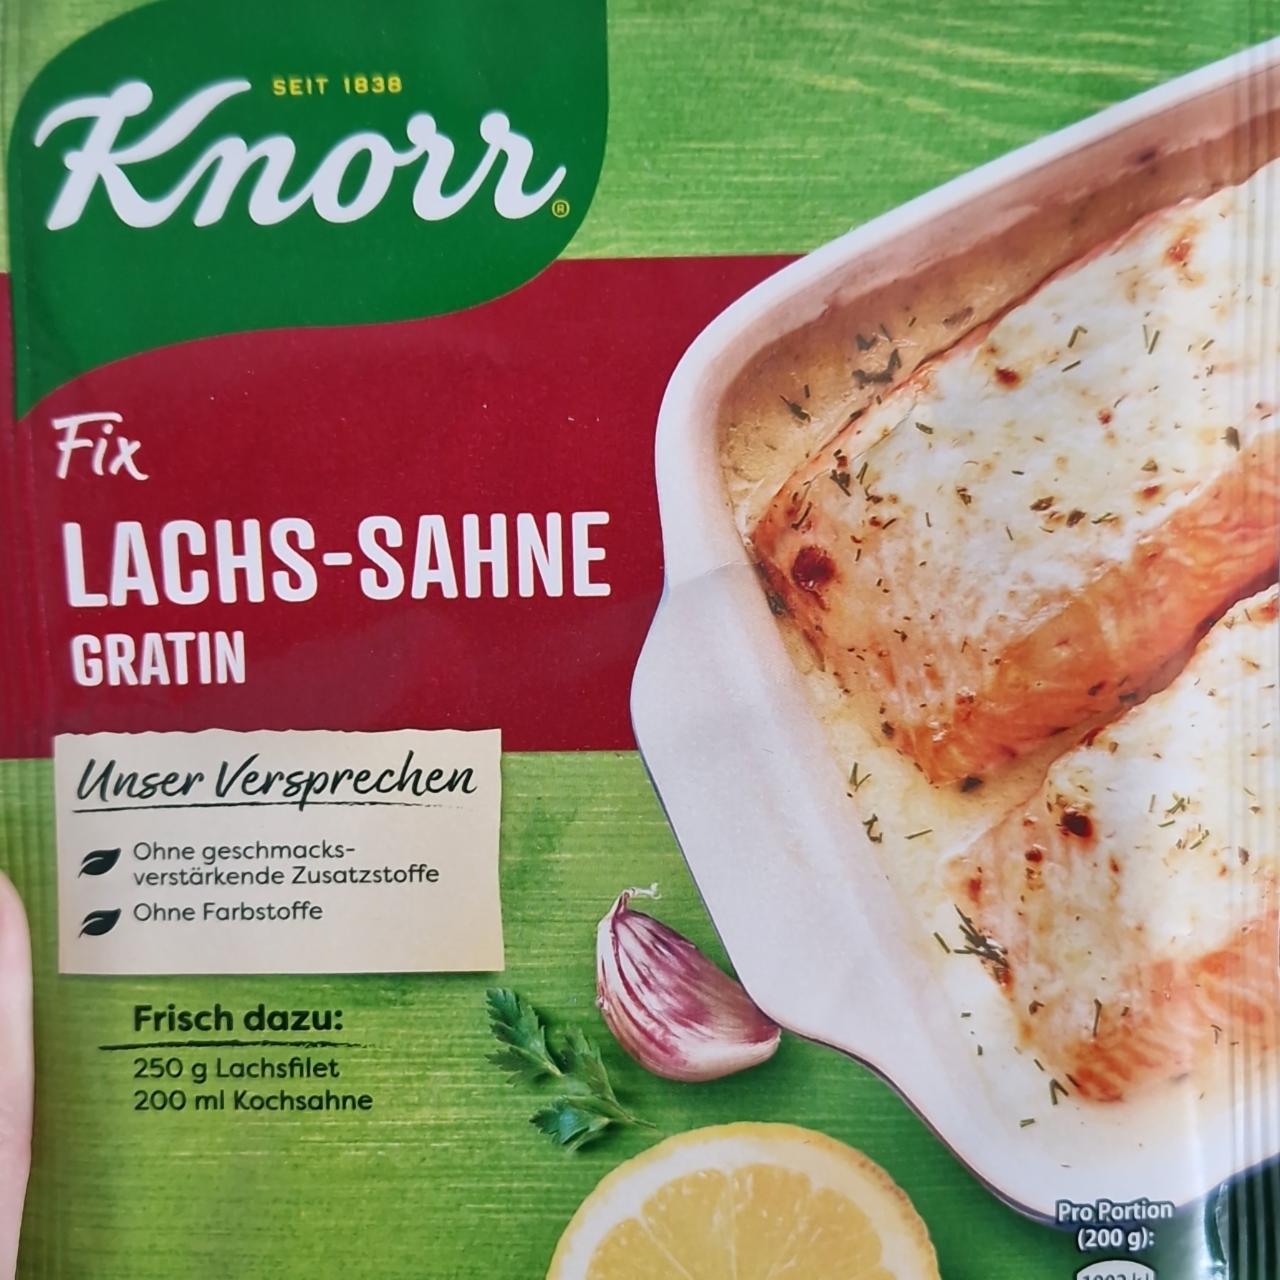 Fotografie - Fix lachs-sahne gratin Knorr